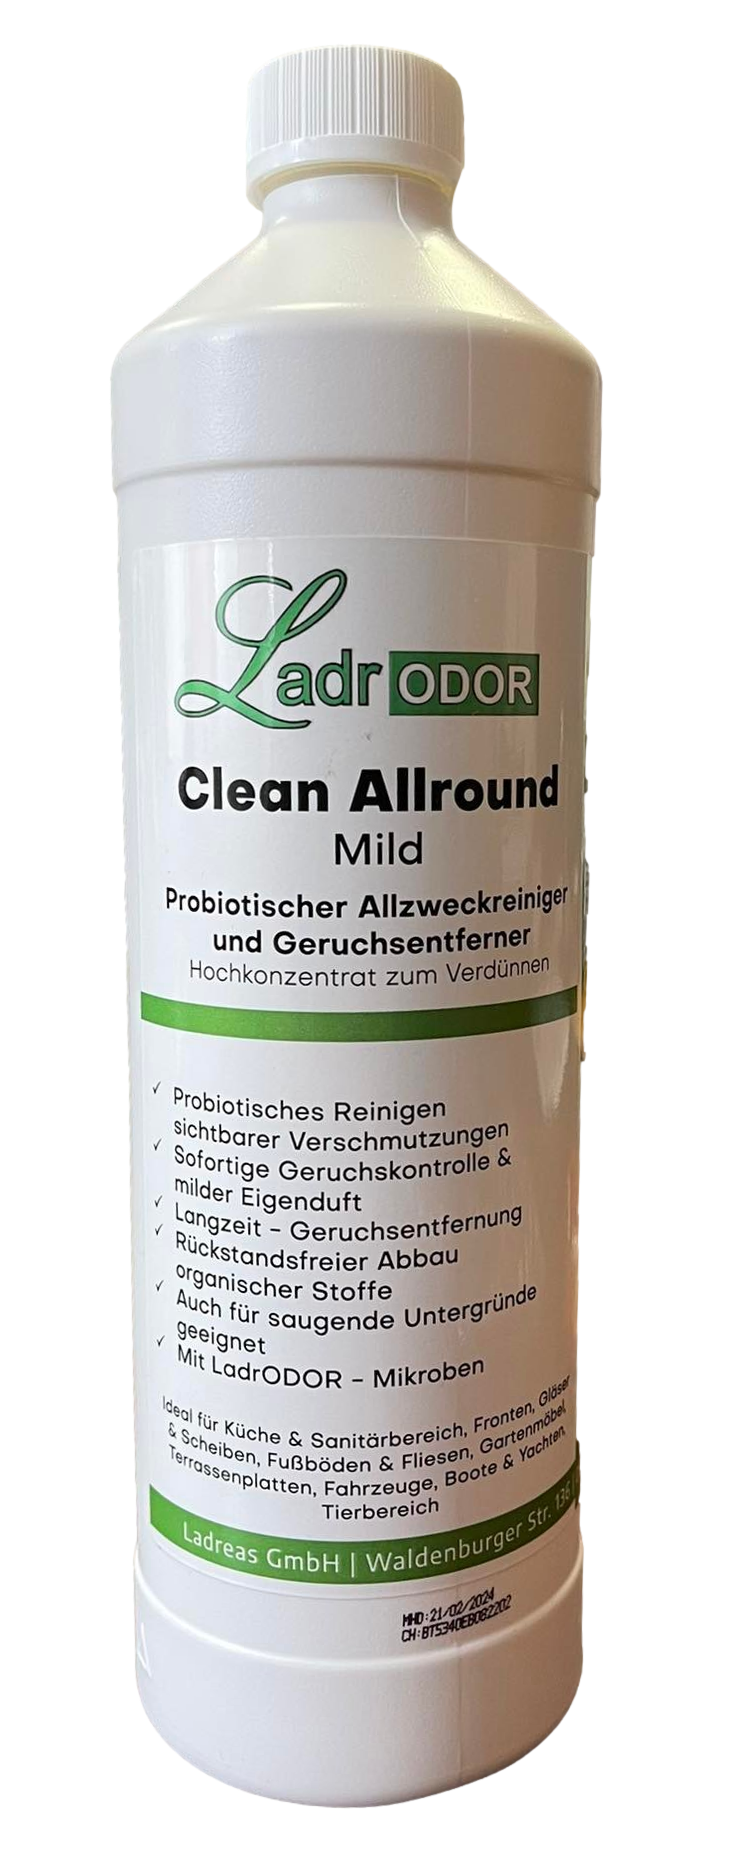 Ladrodor Clean Allround Konzentrat probiotischer Reiniger und Geruchsentferner